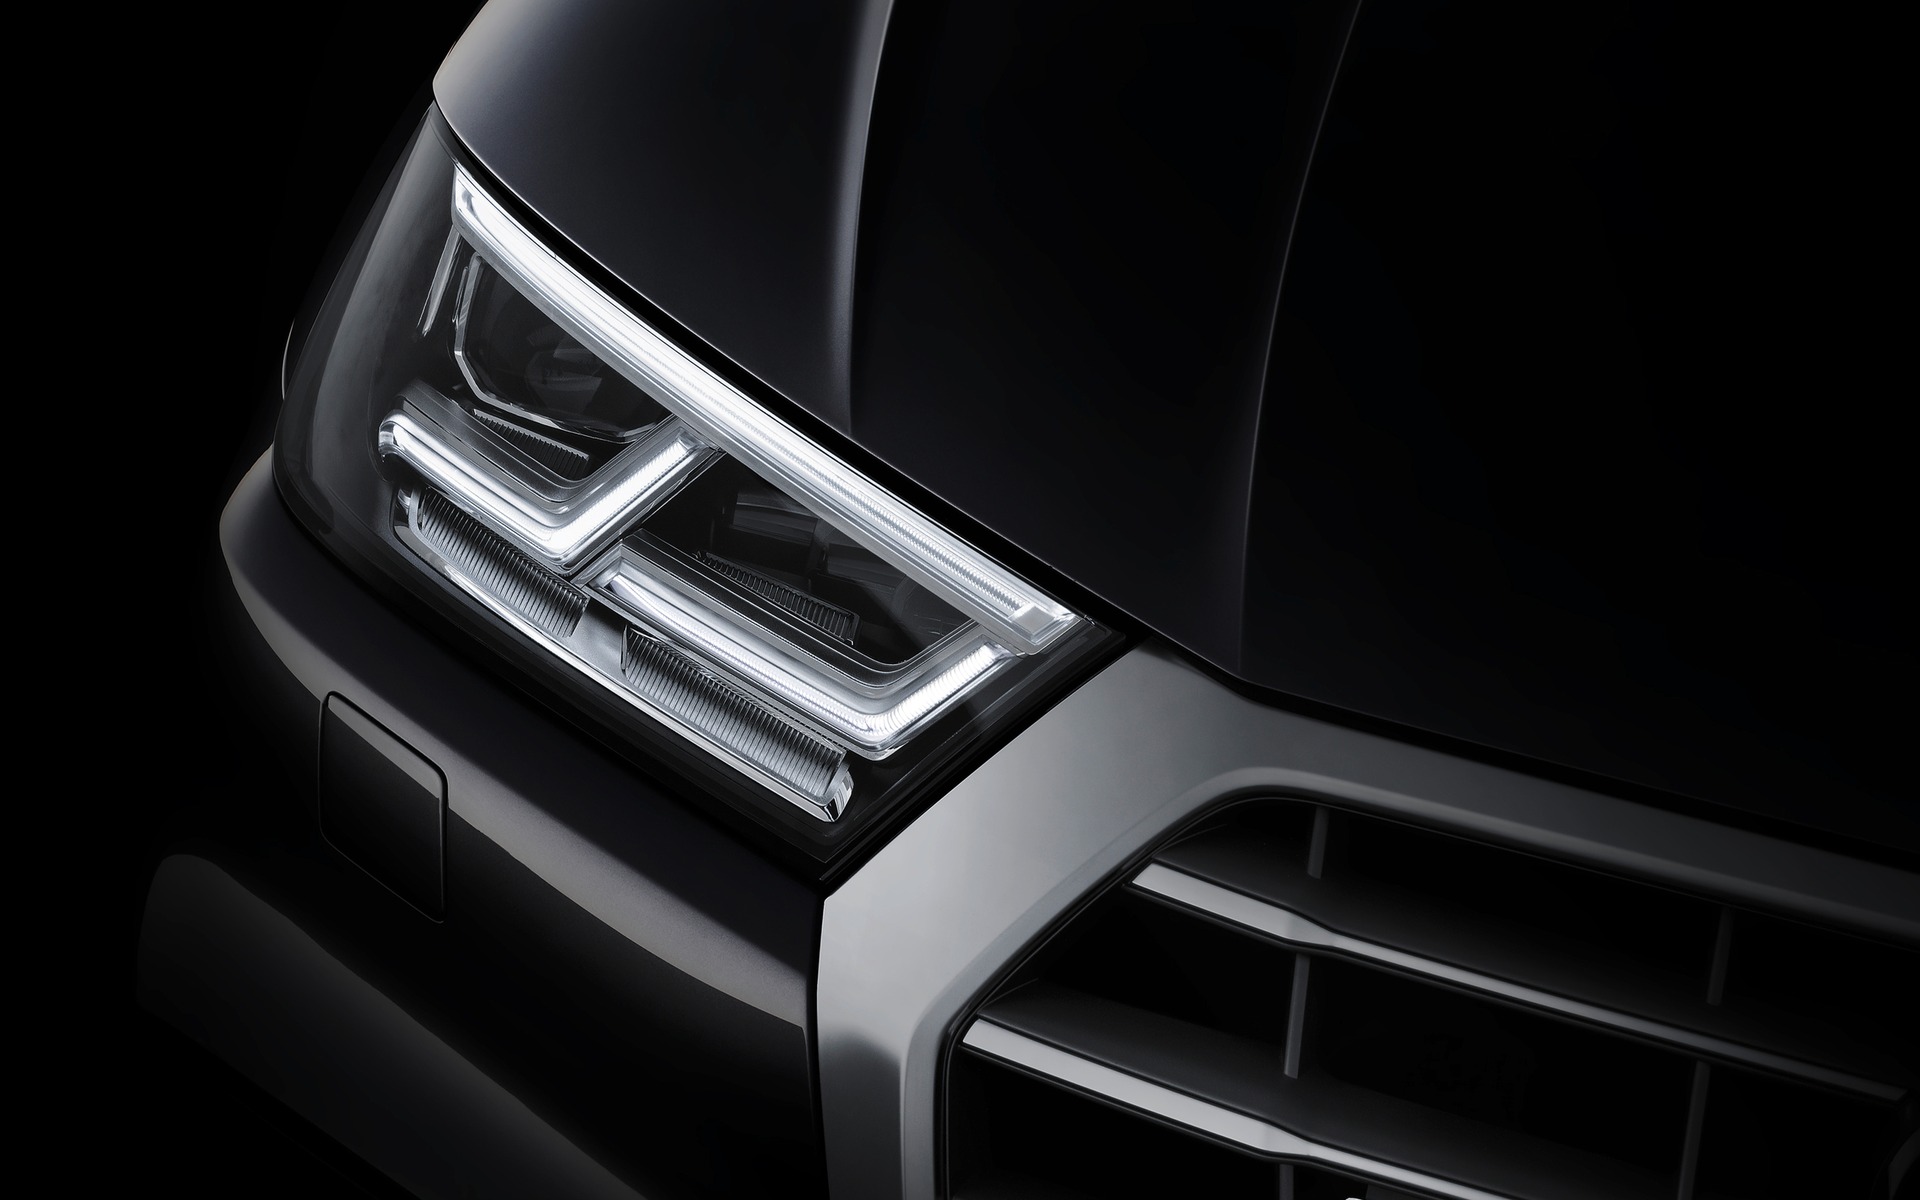 The New Audi Q5